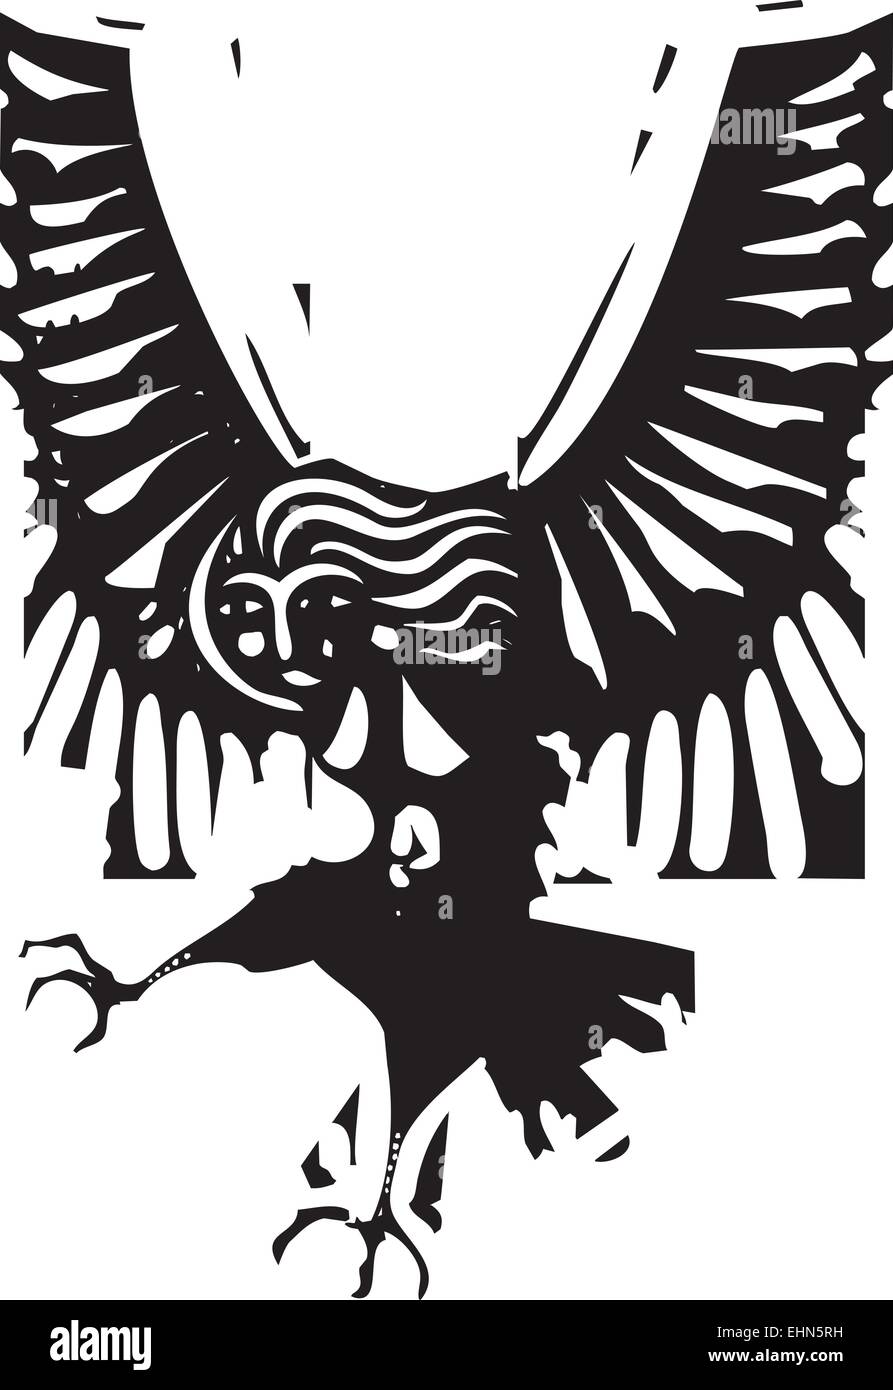 Holzschnitt-Stil Bild der griechischen mythologischen Harpyie Frau mit Flügeln Stock Vektor